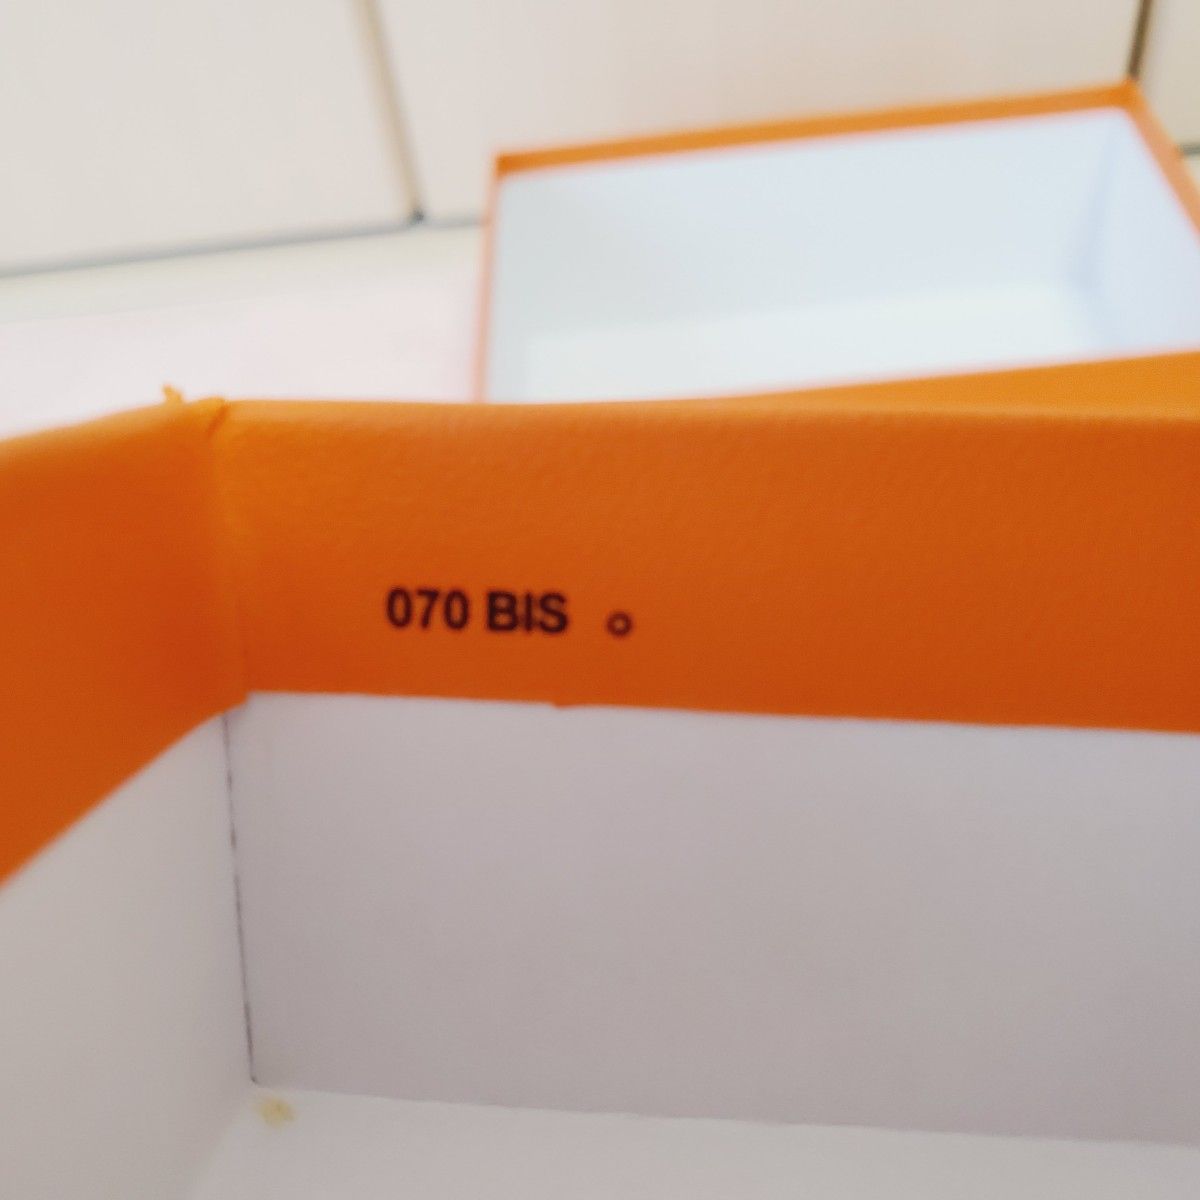 エルメス HERMES 空き箱 空箱 化粧箱 070 BIS オレンジボックス